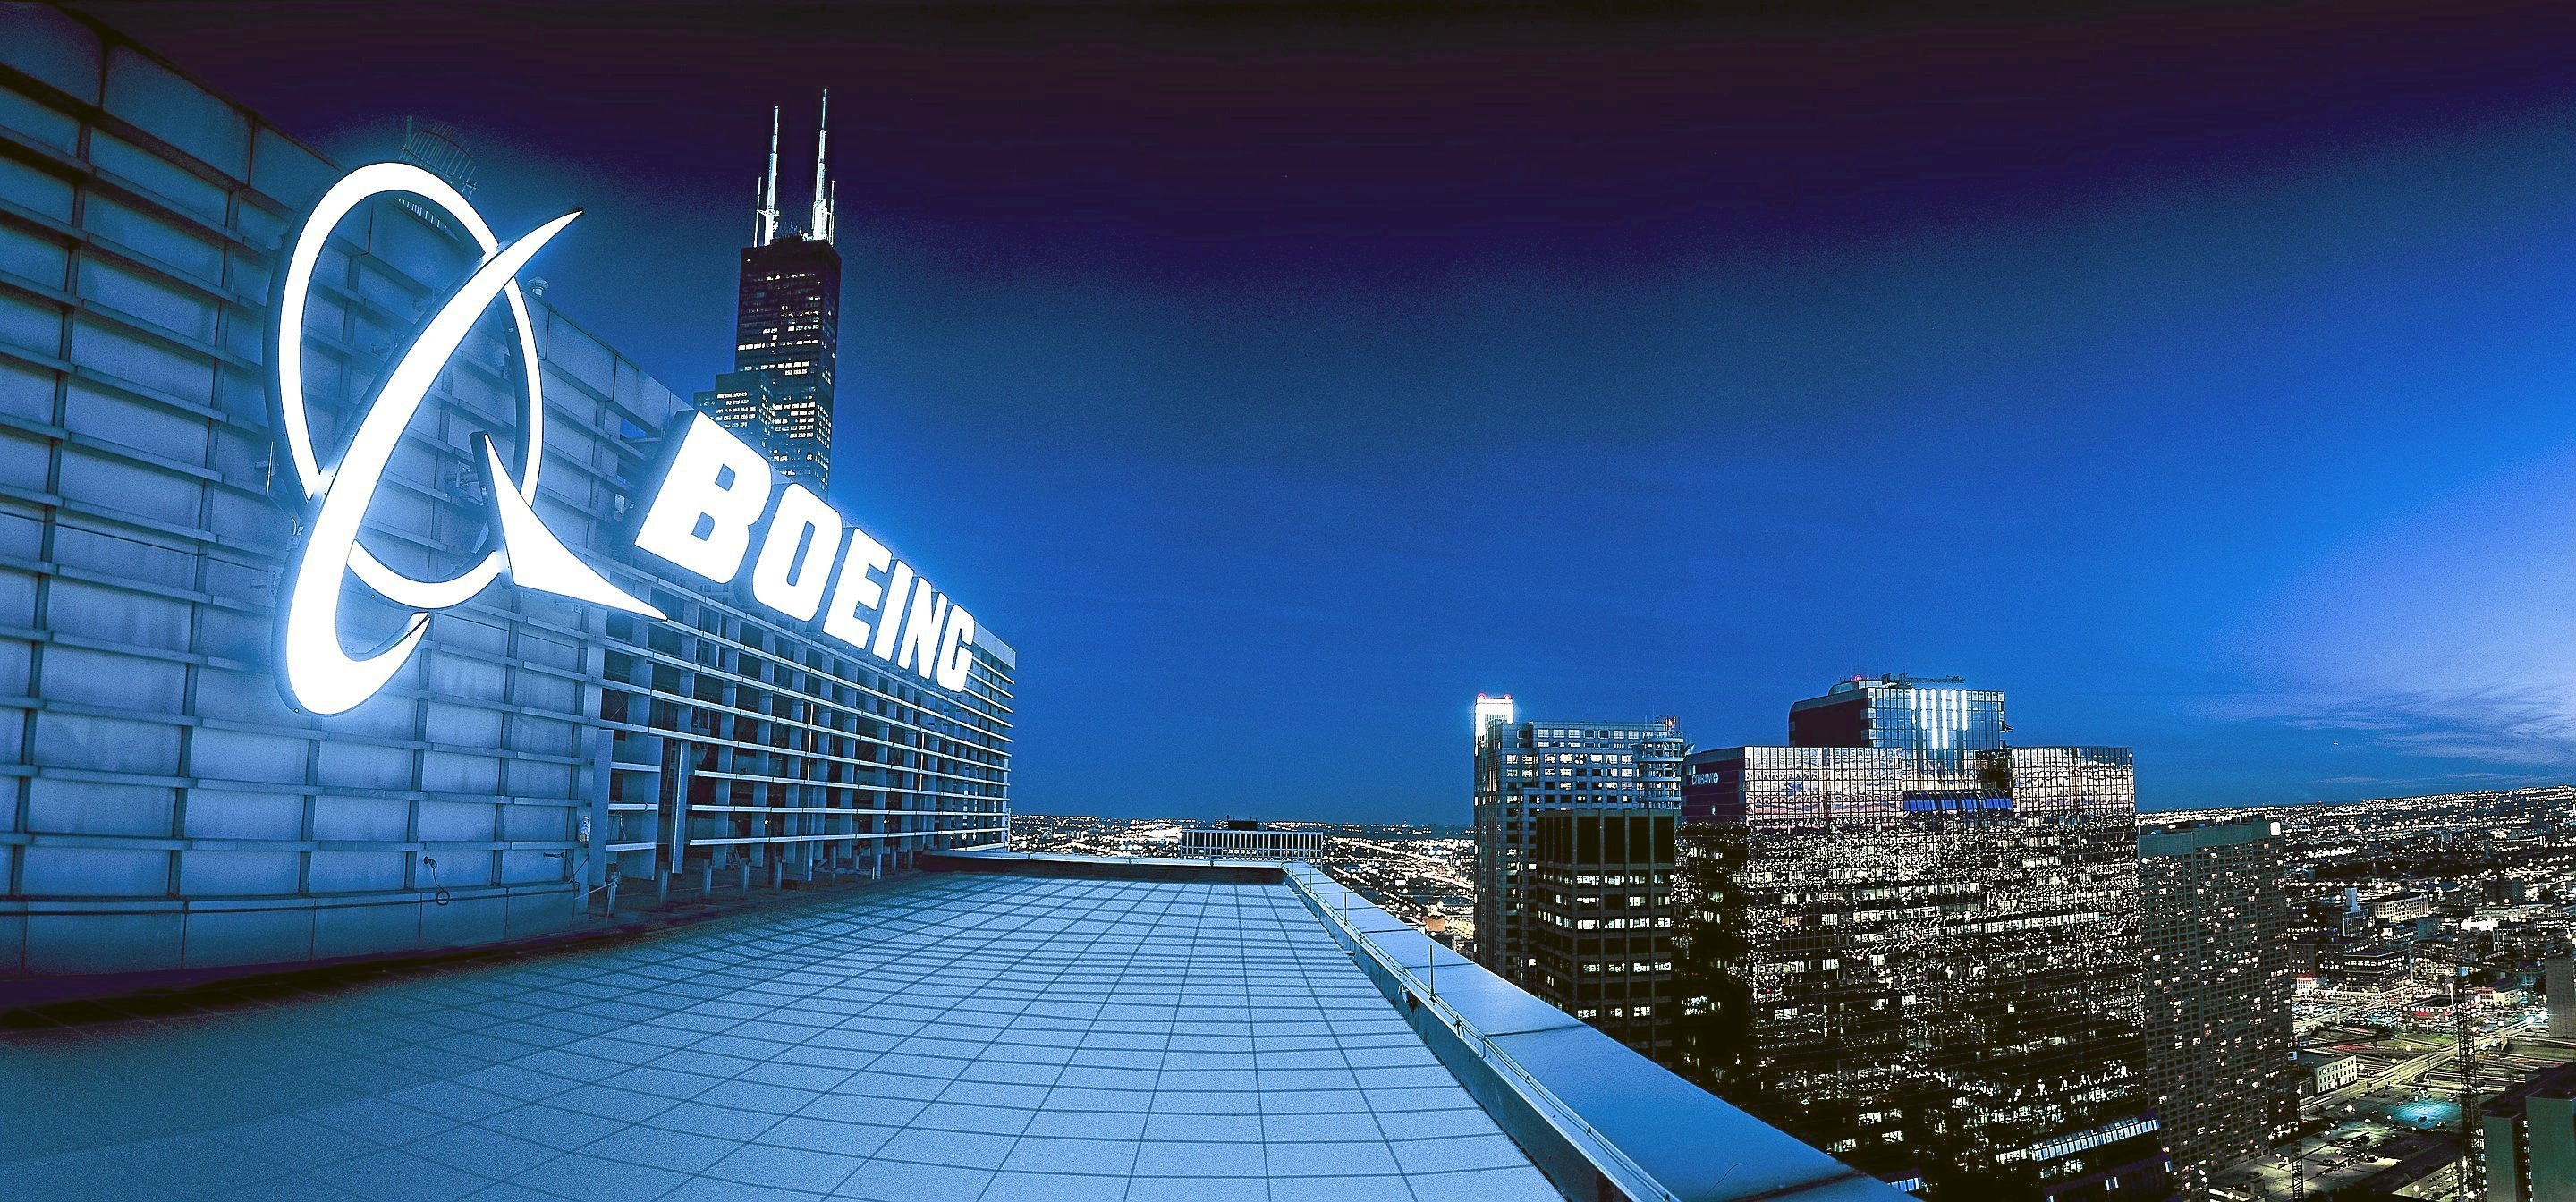 Sede de Boeing.